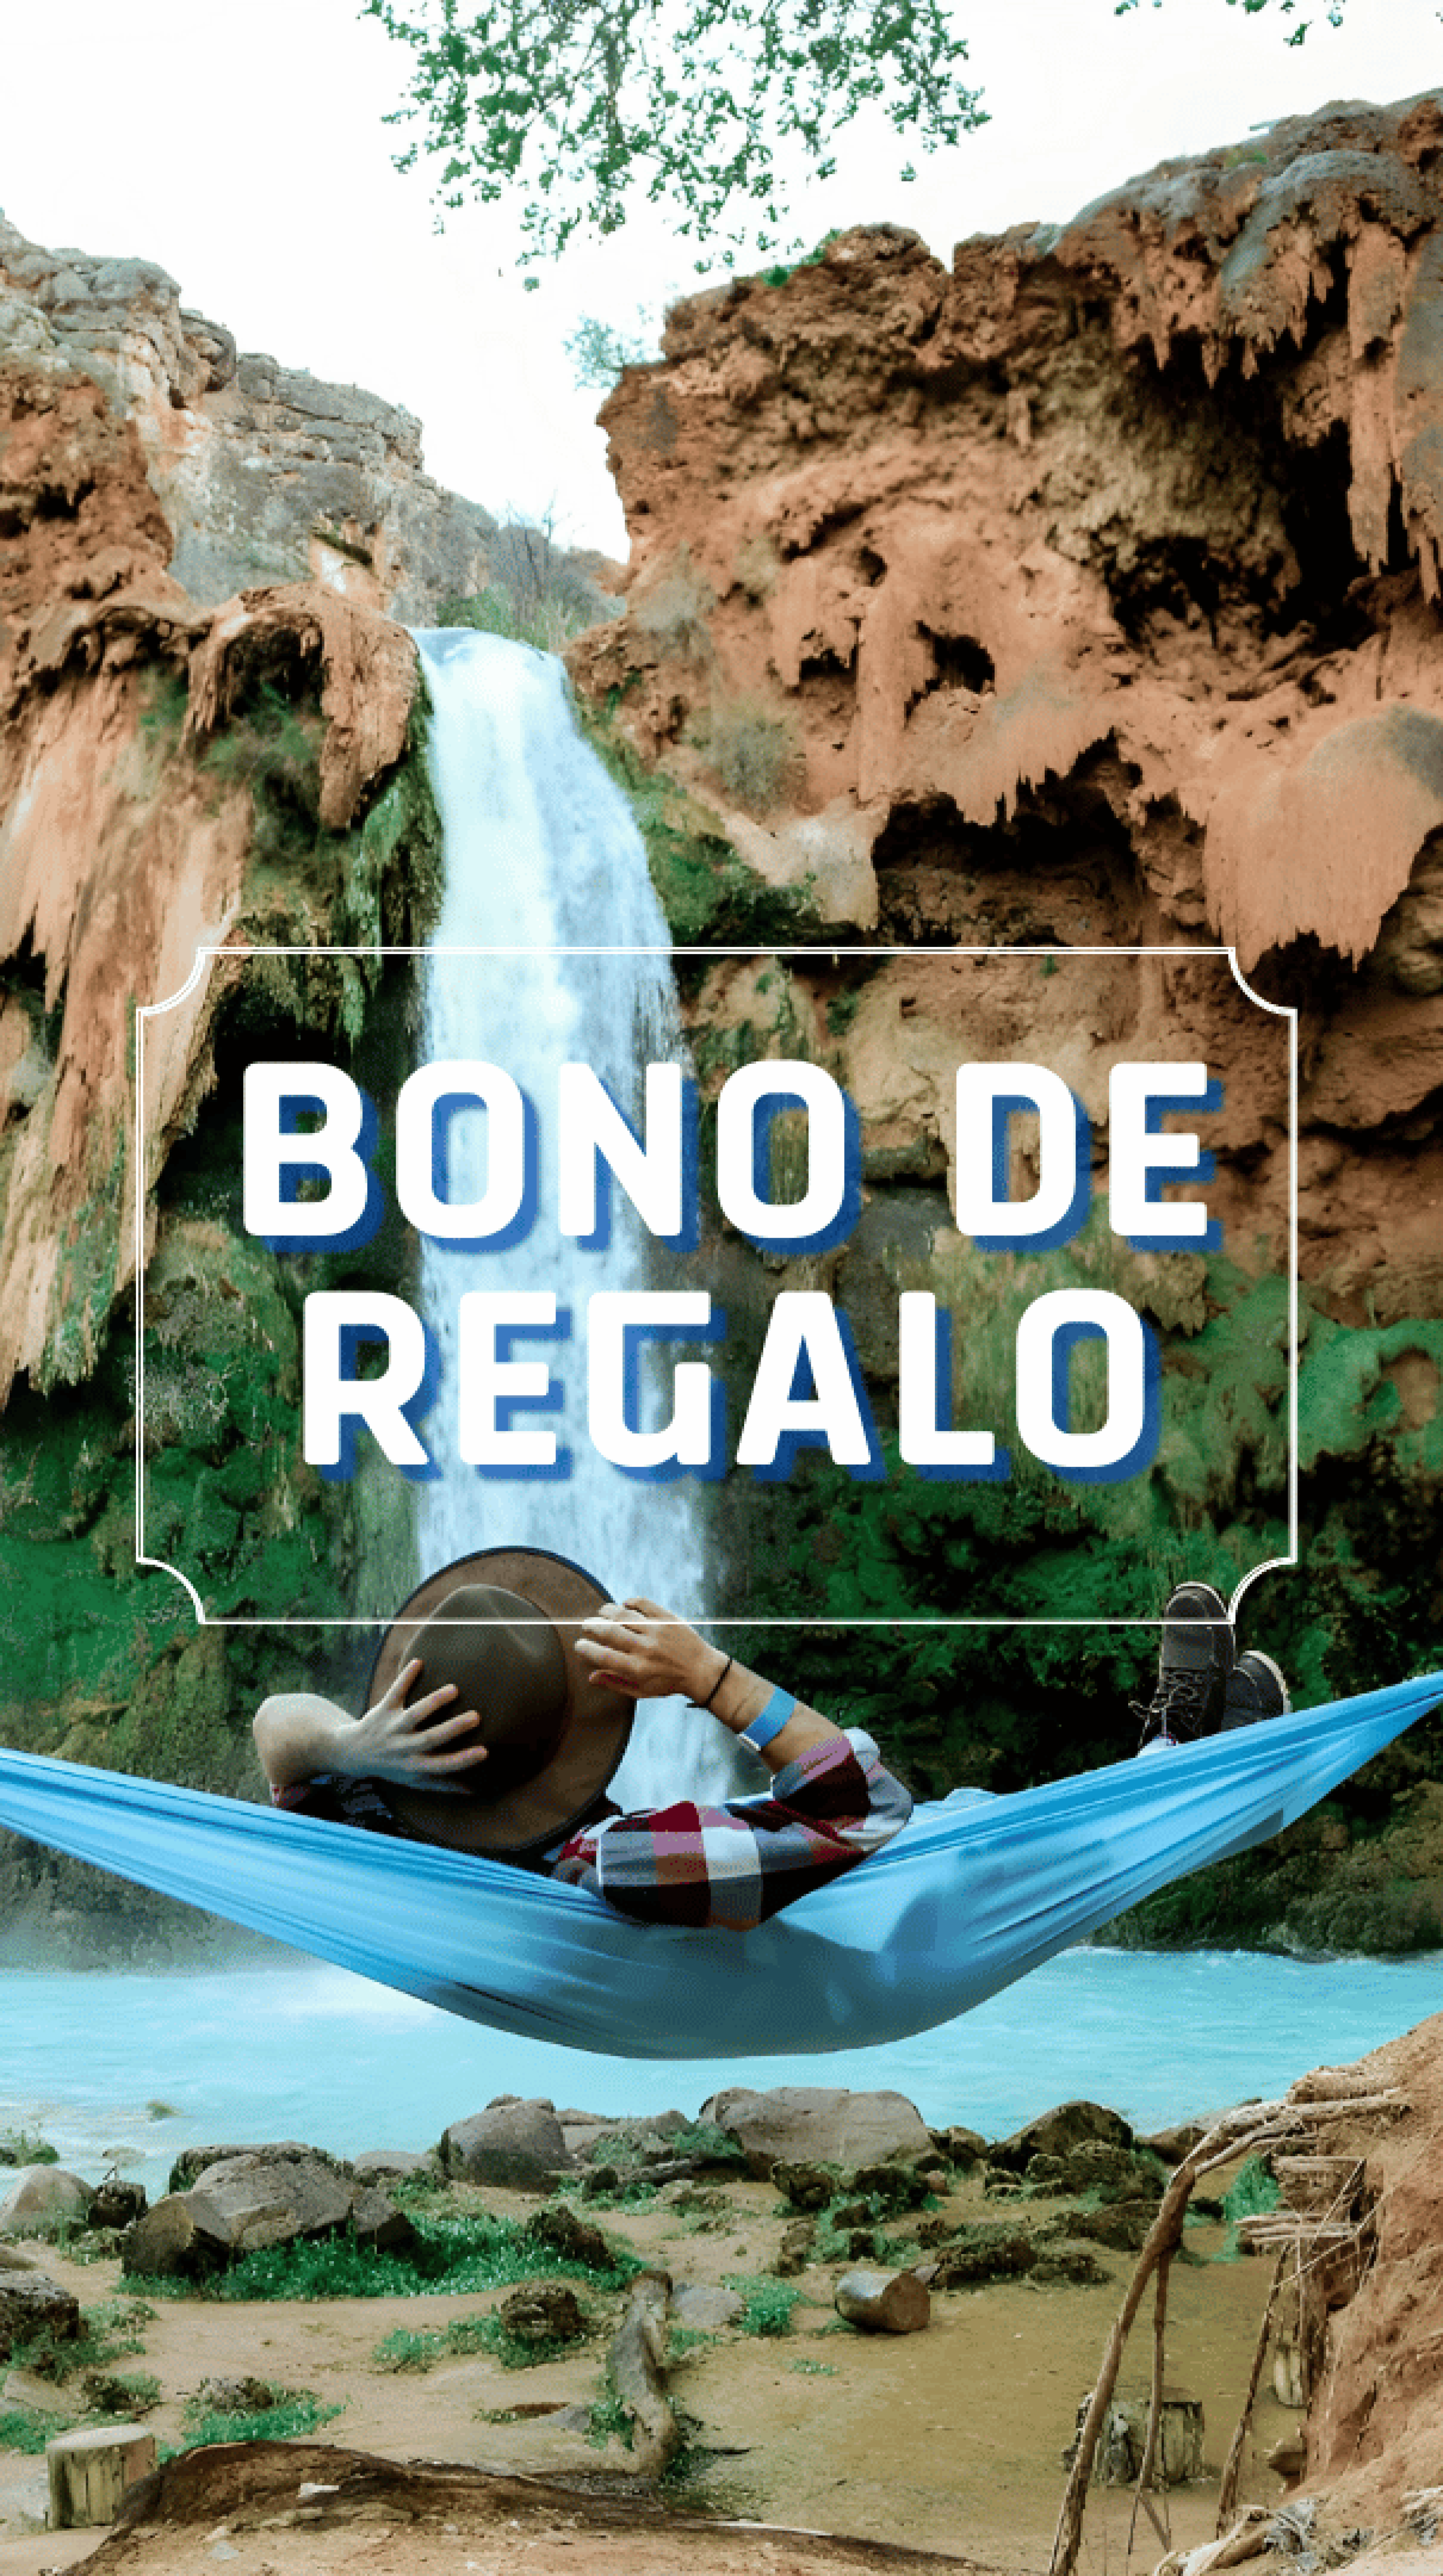 Bono-de-regalo Festival Tours